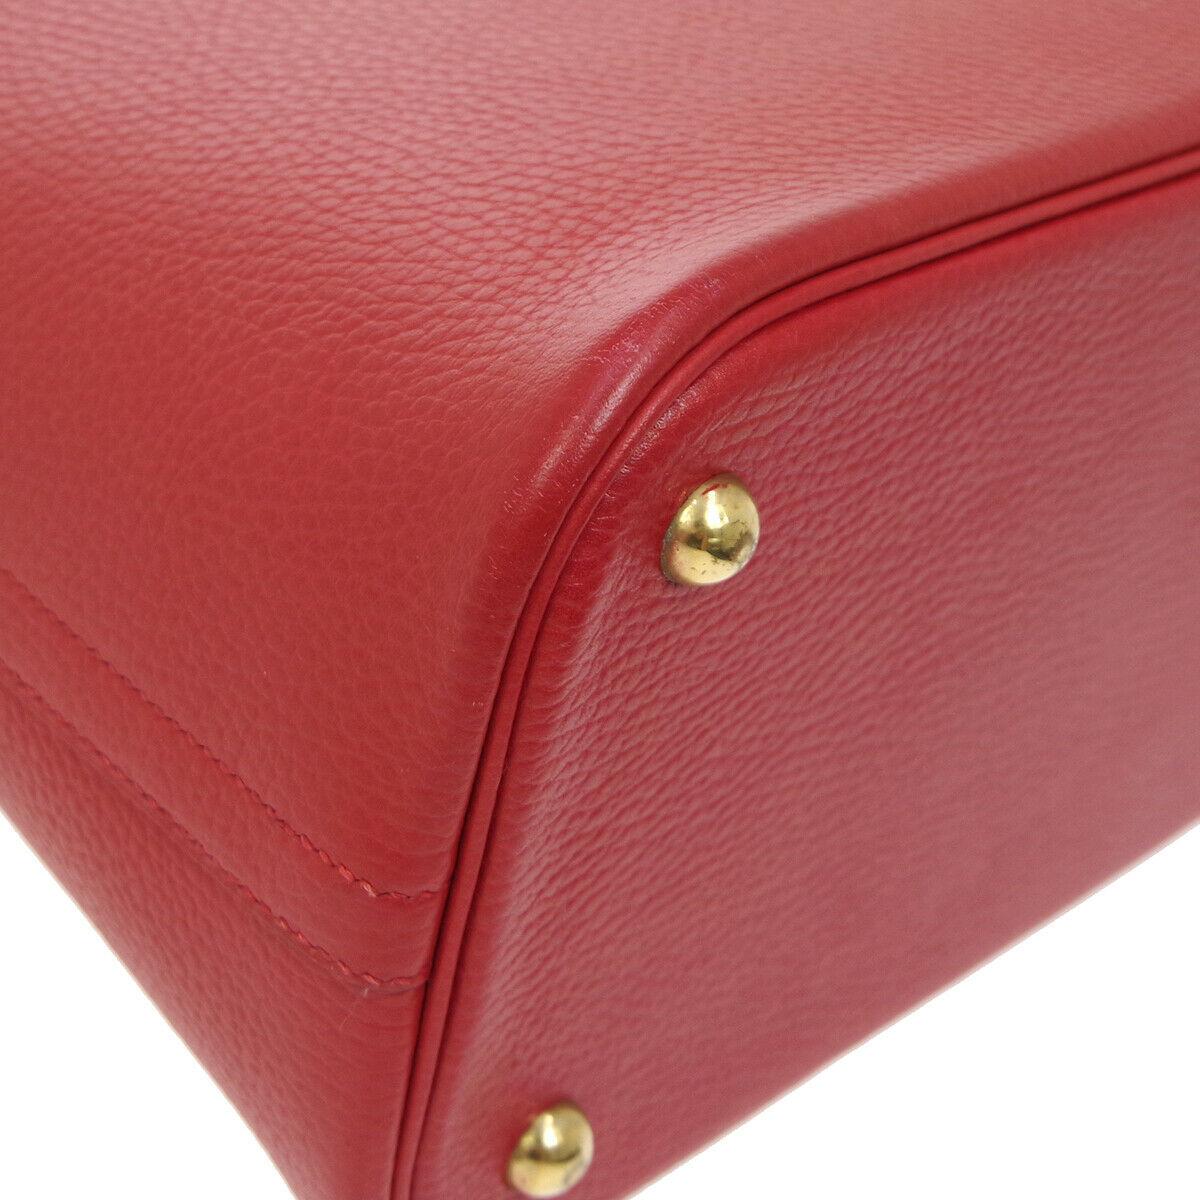 Hermes Red Leather Gold Top Handle Satchel Carryall Travel Shoulder Tote Bag 1